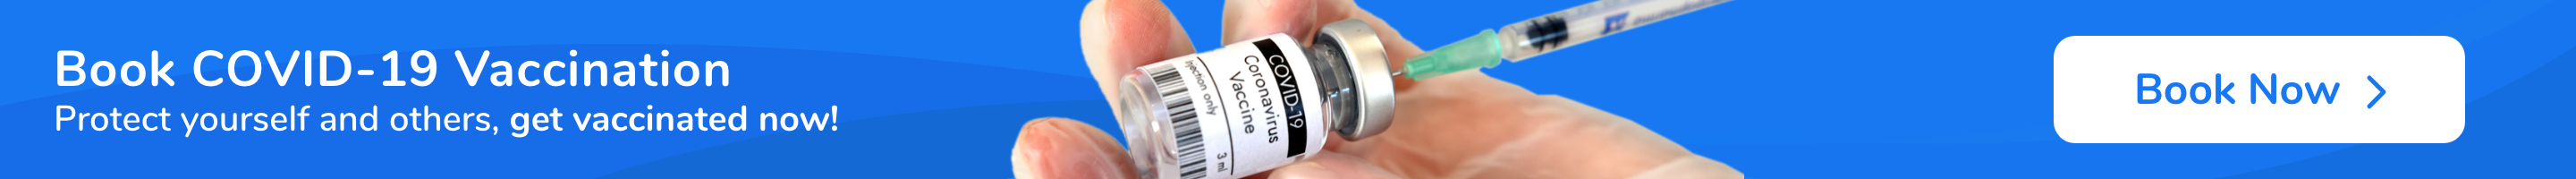 MediBuddy Covid Vaccination